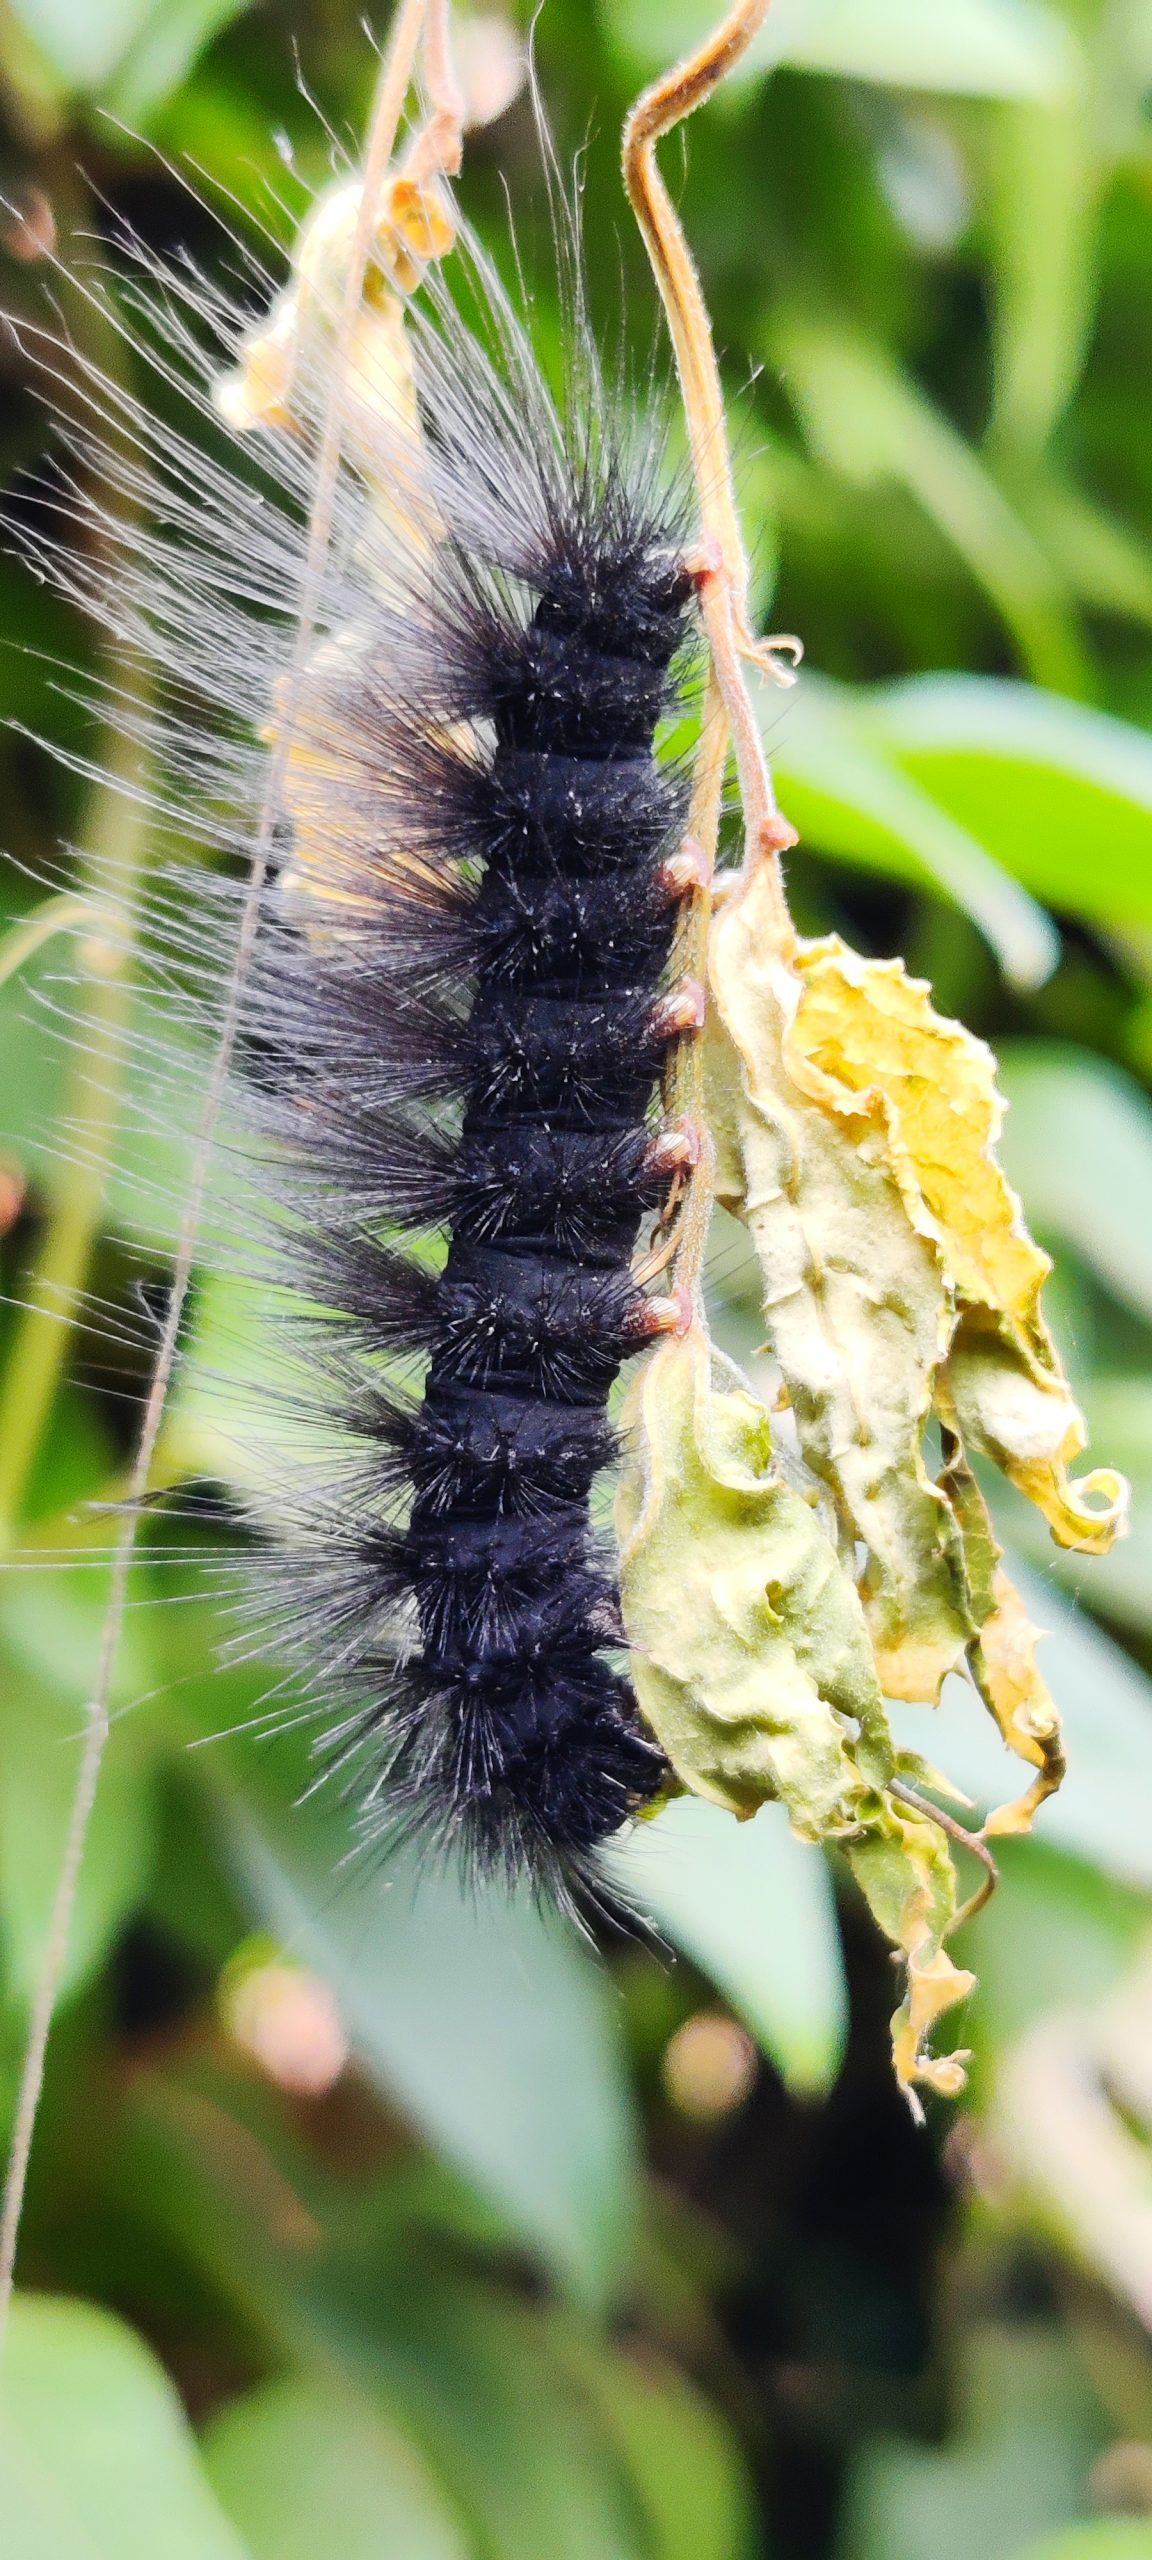 Thorny caterpillar on a leaf